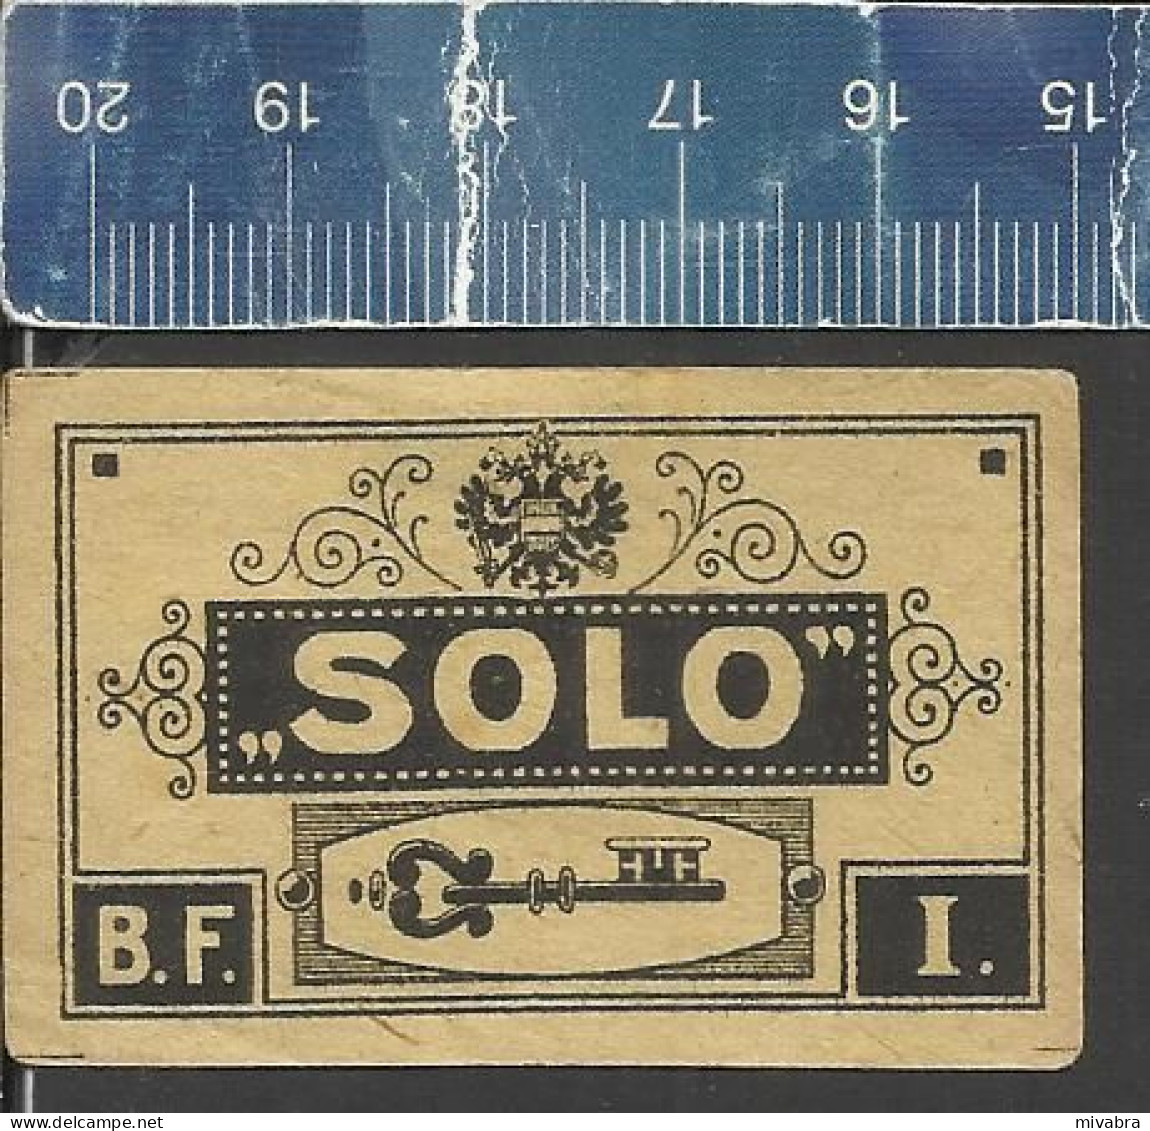 SOLO  - B.F. I. ( KEY CLÉ SCHLÜSSEL SLEUTEL ) - OLD VINTAGE CZECHOSLOVAKIAN MATCHBOX LABEL - Matchbox Labels